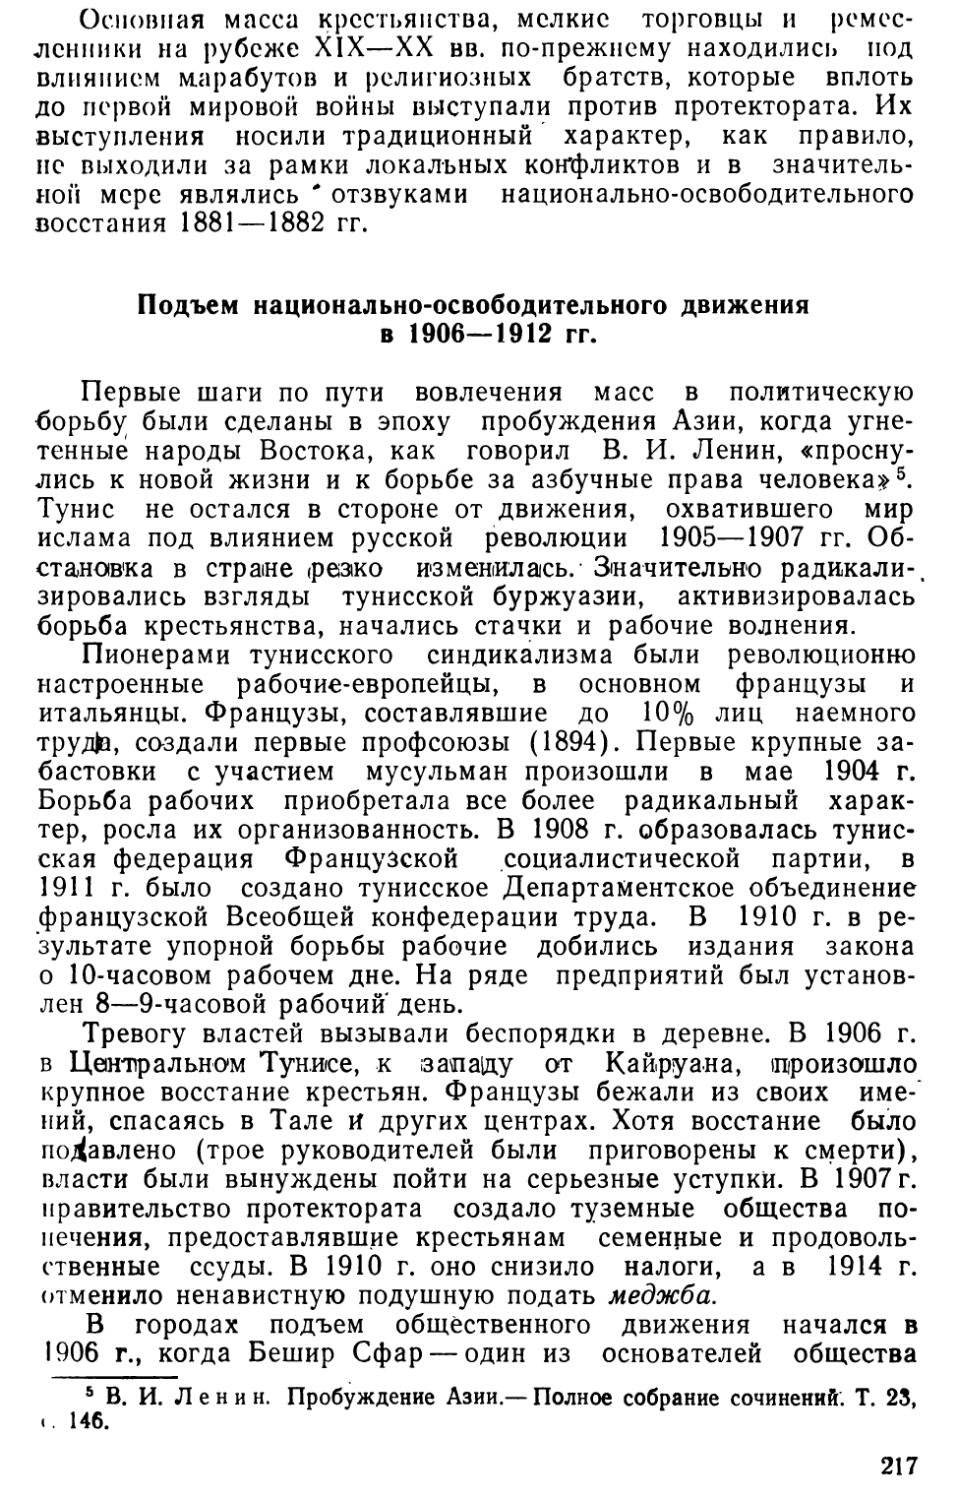 Подъем национально-освободительного движения в 1906—1912 гг.